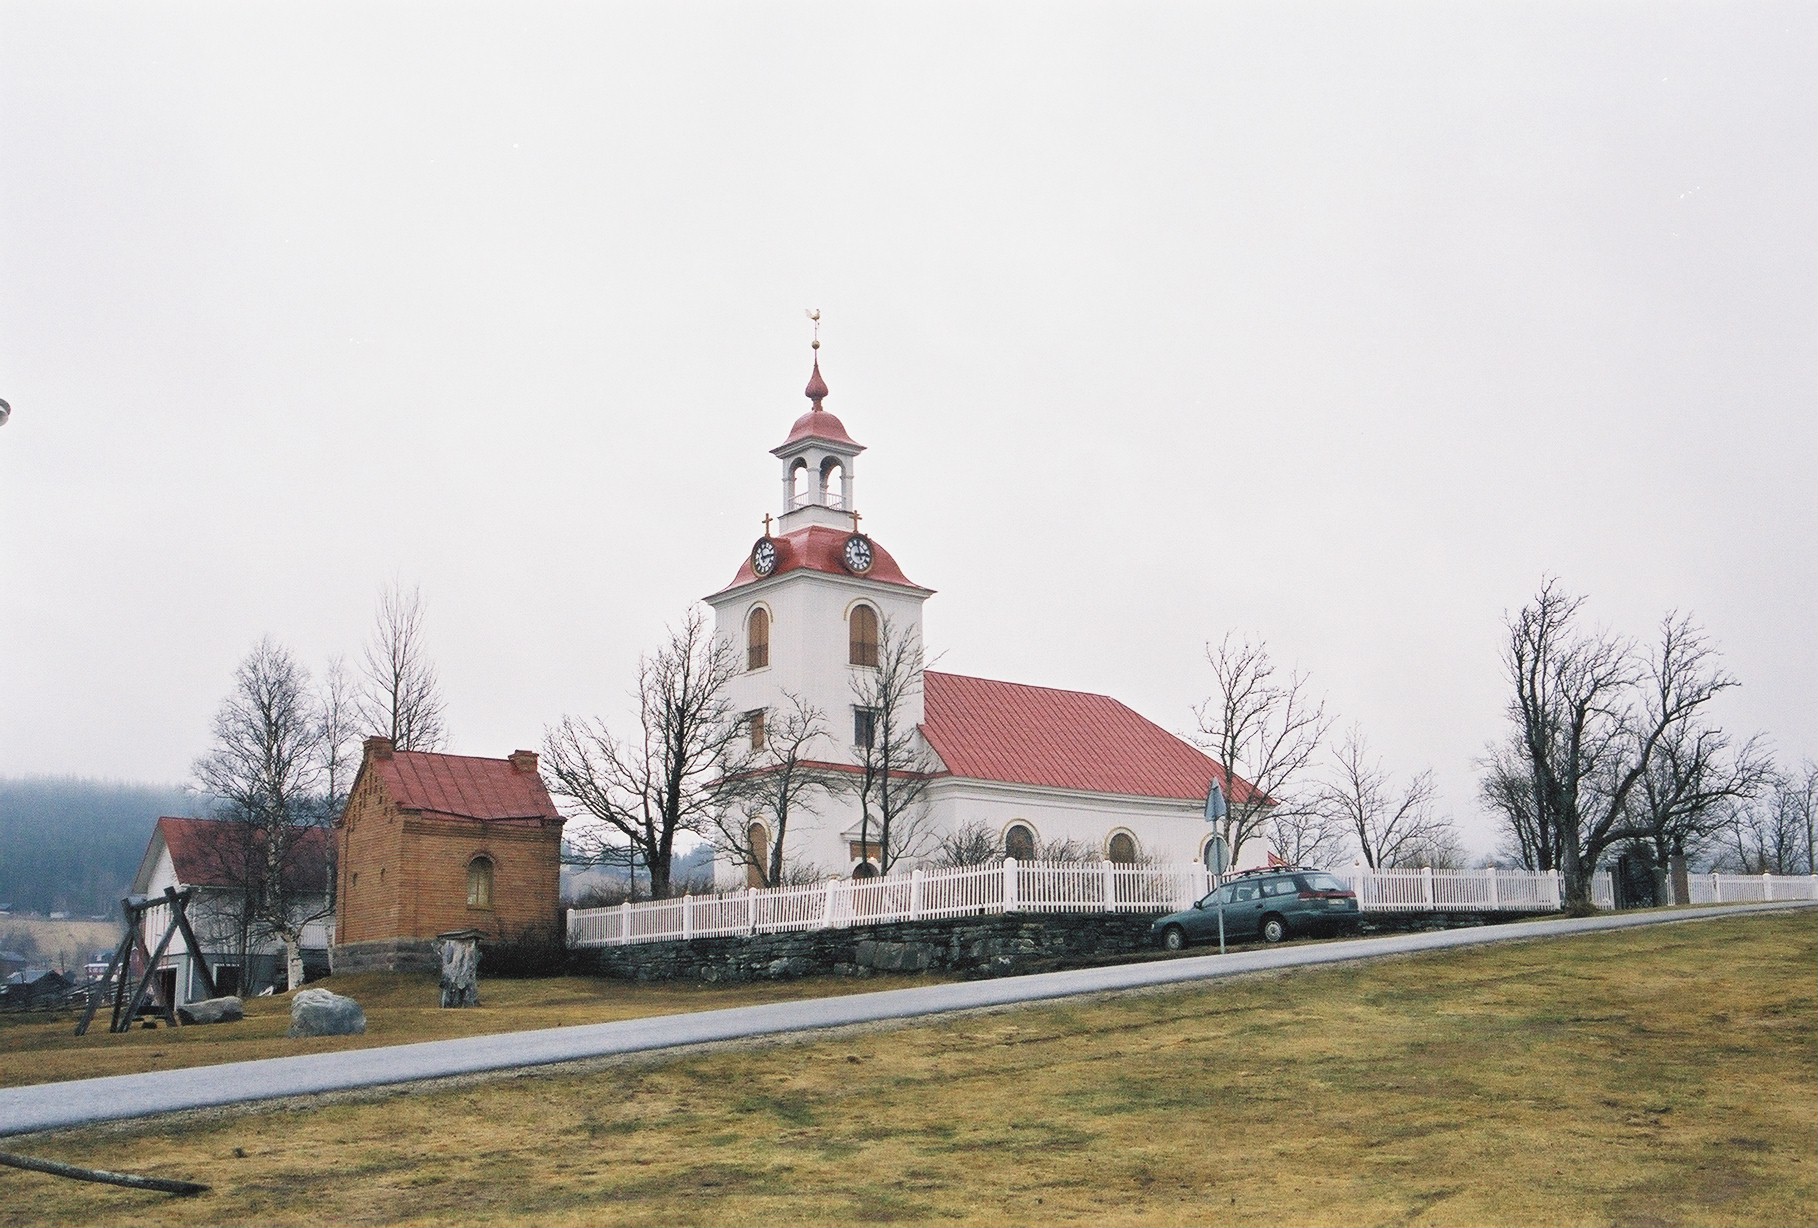 Klövsjö kyrka med omgivande kyrkogård vy mot nordost.

Martin Lagergren & Emelie Petersson, bebyggelseantikvarier vid Jämtlands läns museum, Jamtli, inventerade kyrkor i Härnösands stift 2004-2005. De är även fotografer till bilderna.